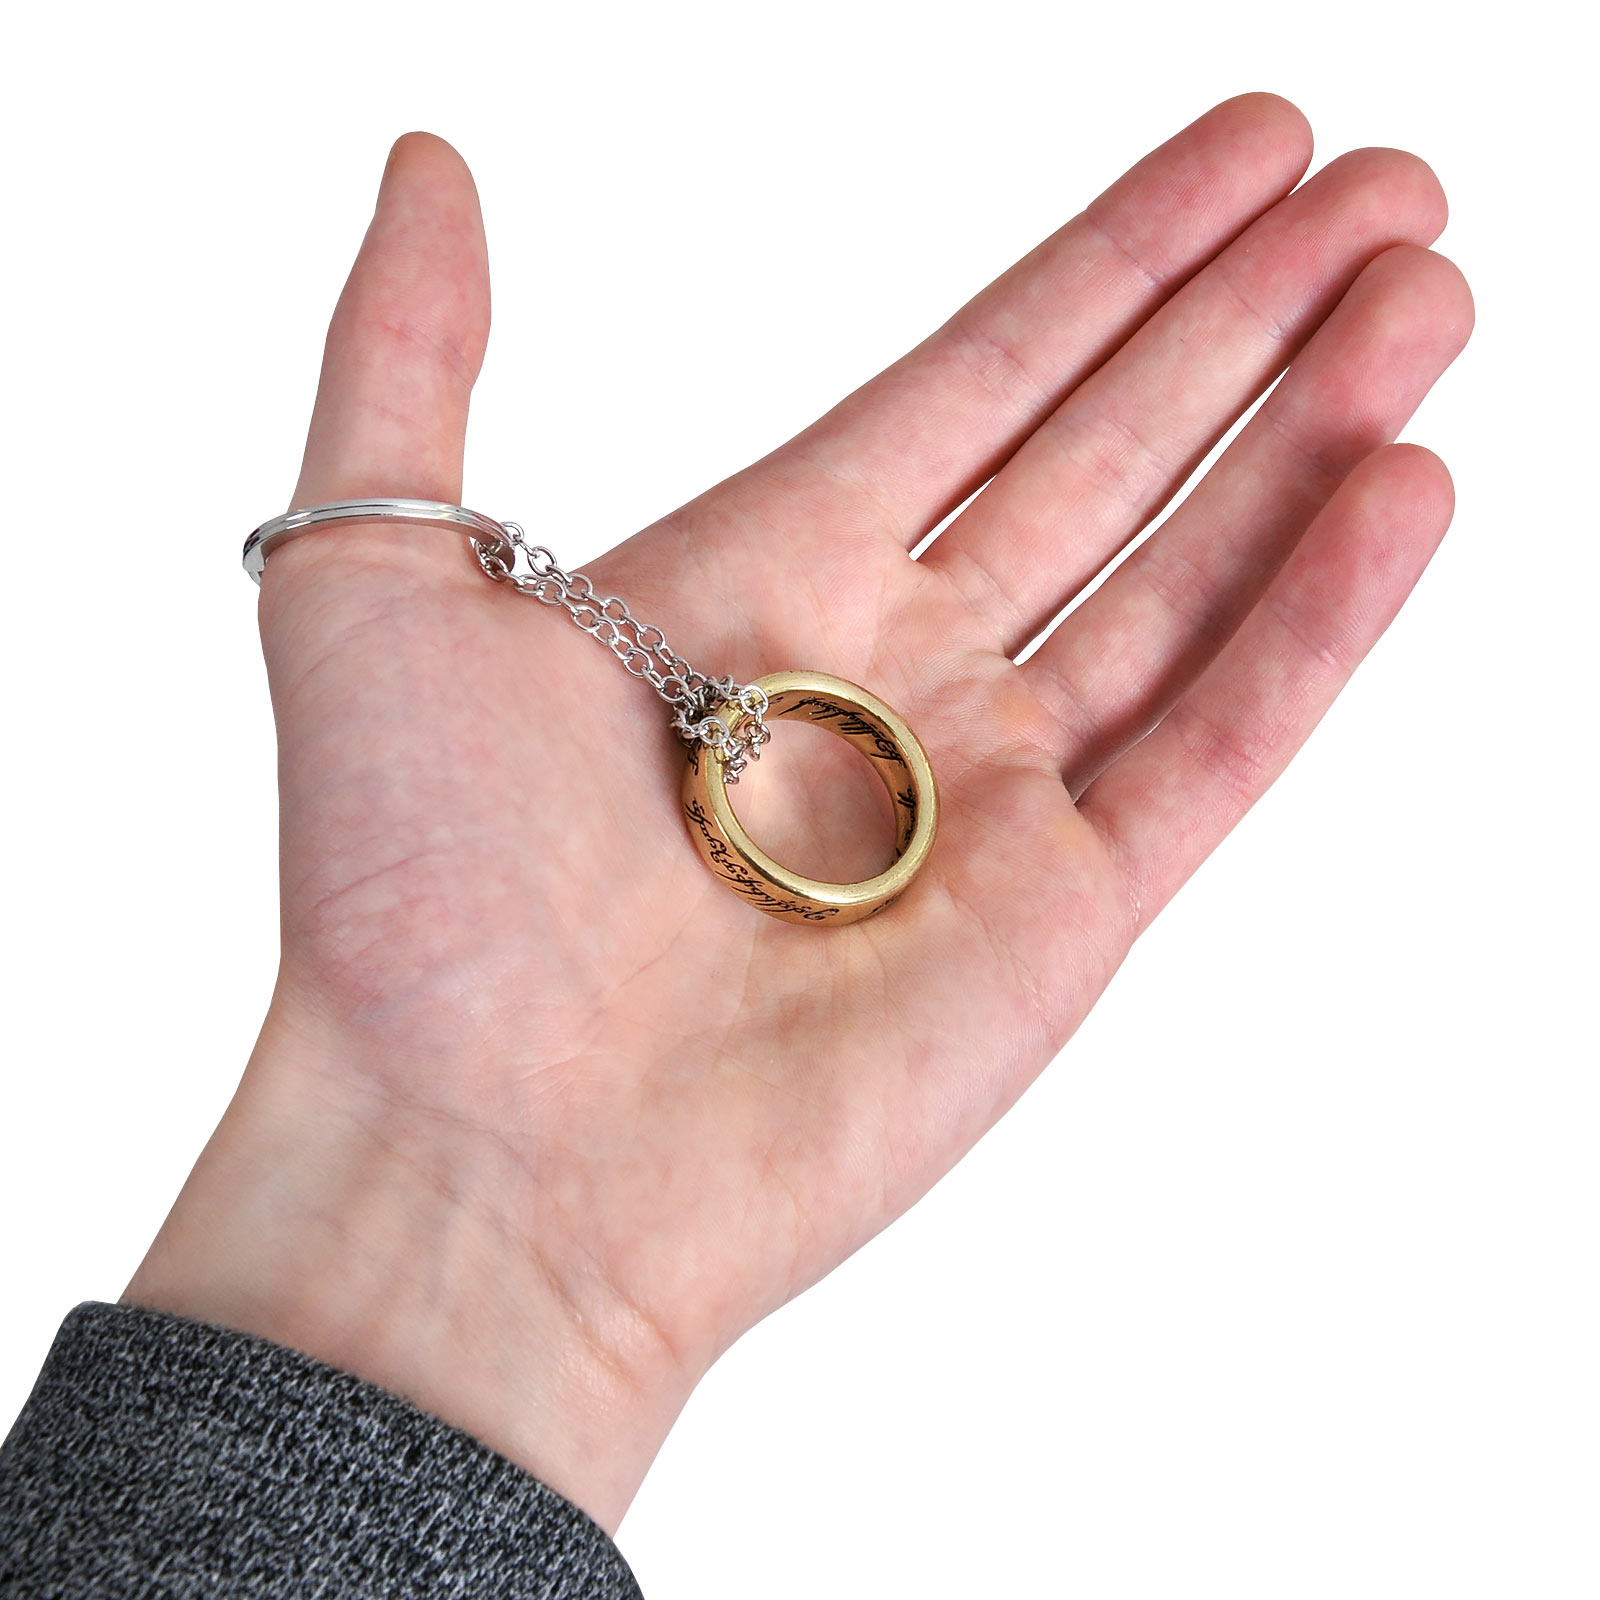 Herr der Ringe - Der Eine Ring 3D Schlüsselanhänger